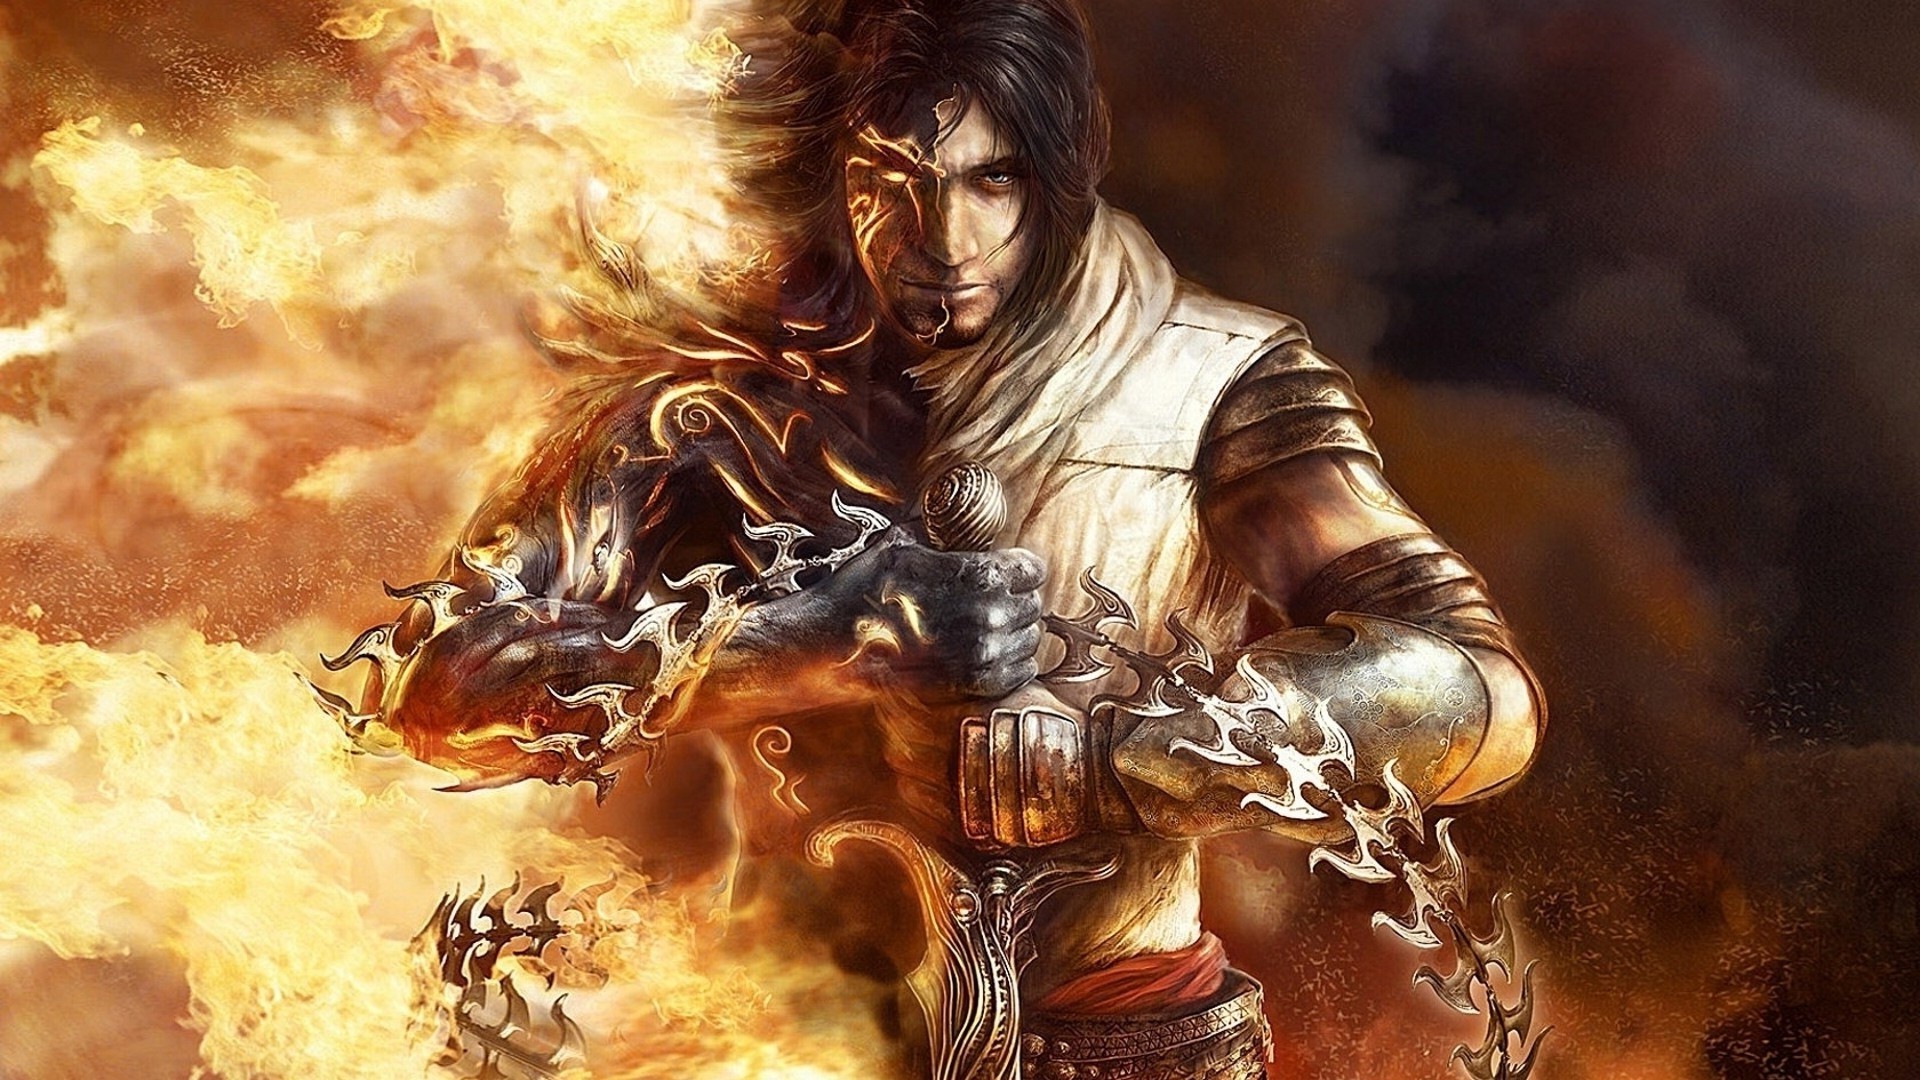 32+] Prince Of Persia Two Thrones Wallpaper - WallpaperSafari